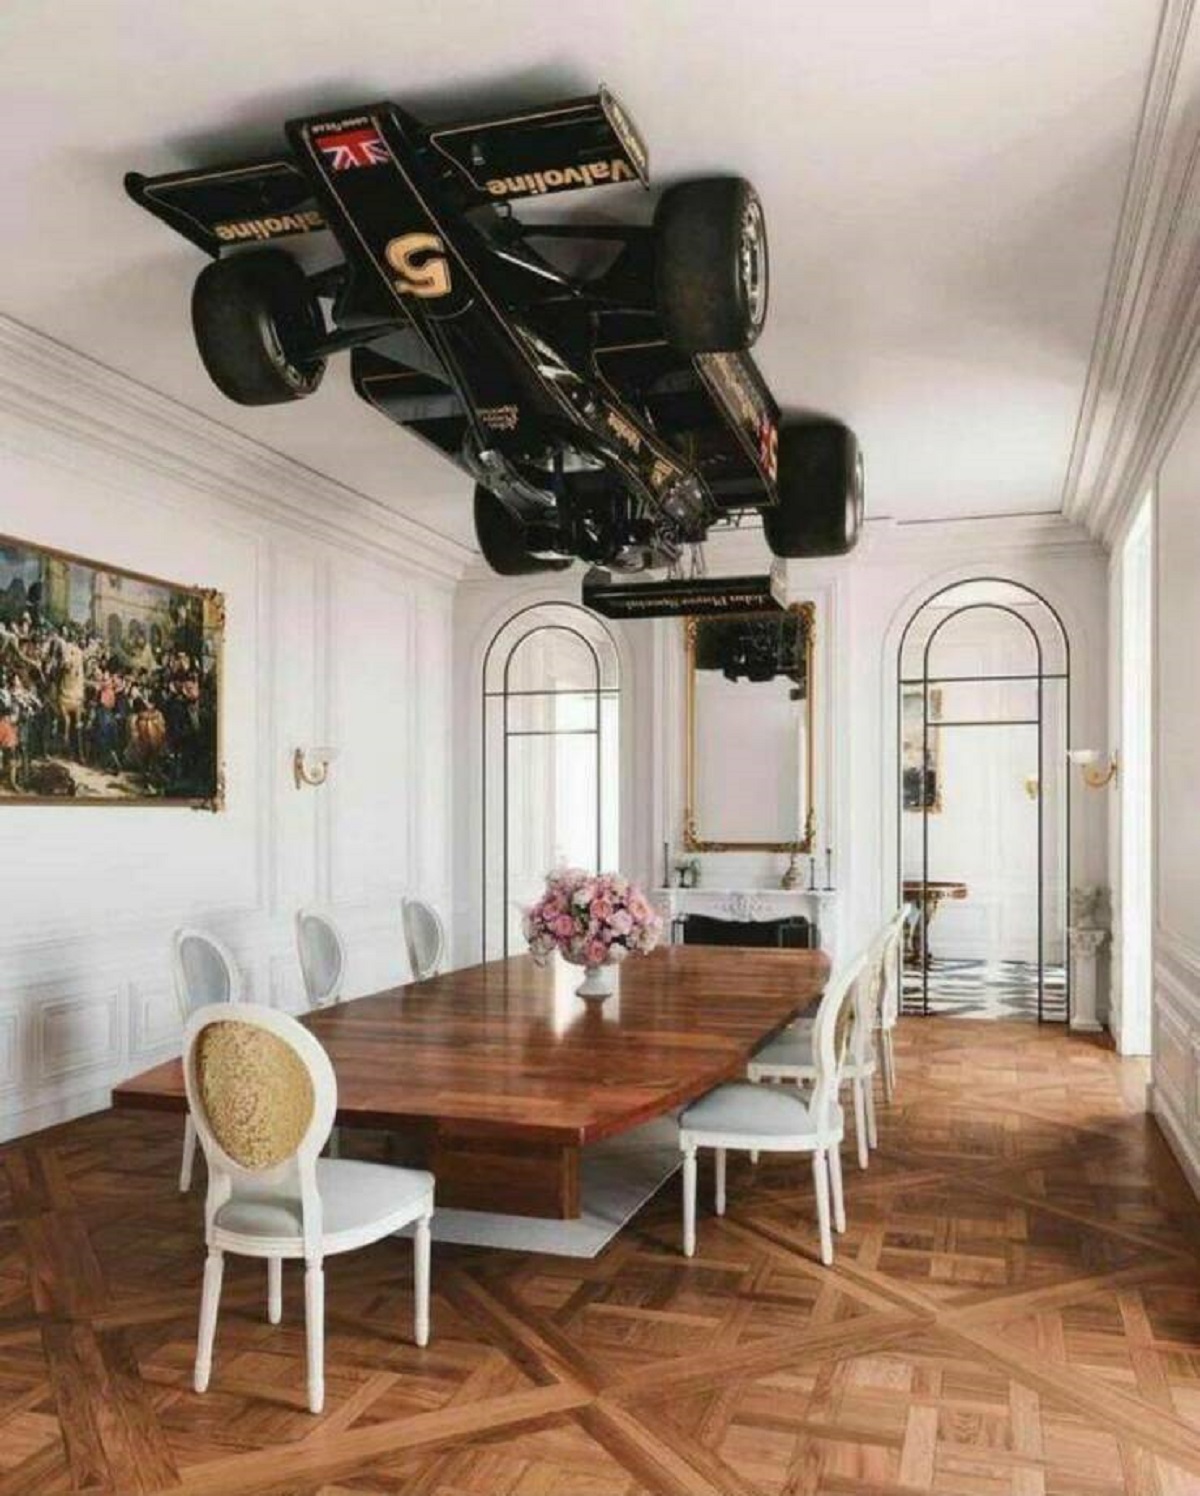 f1 car on ceiling